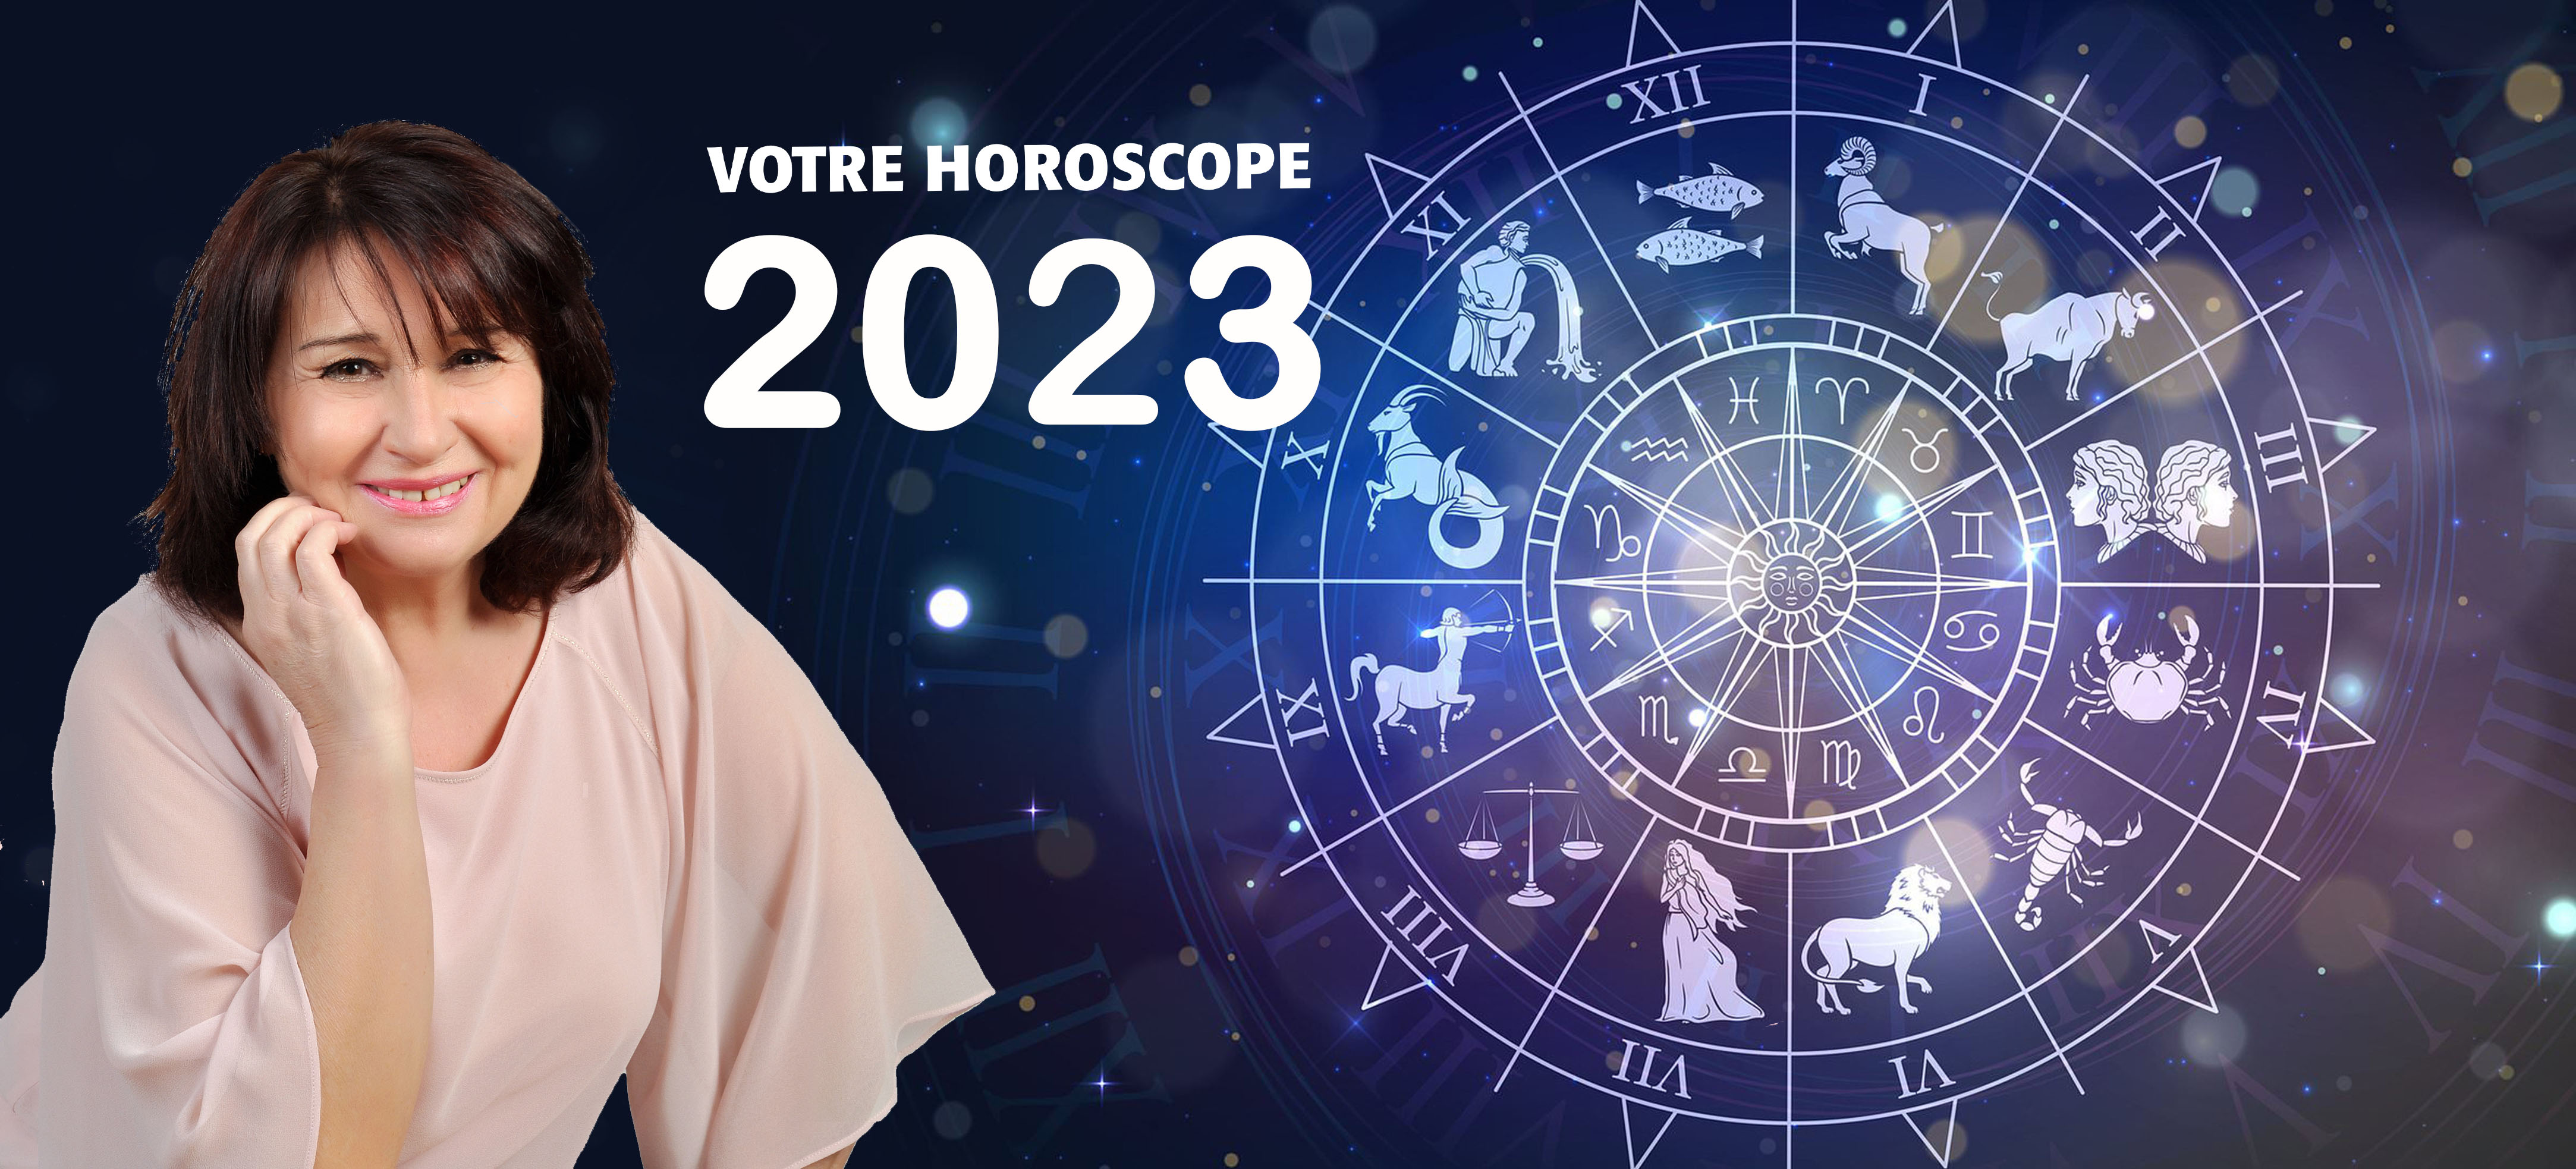 Le Grand Horoscope complet 2023 de l'astrologue Suzie Gentile